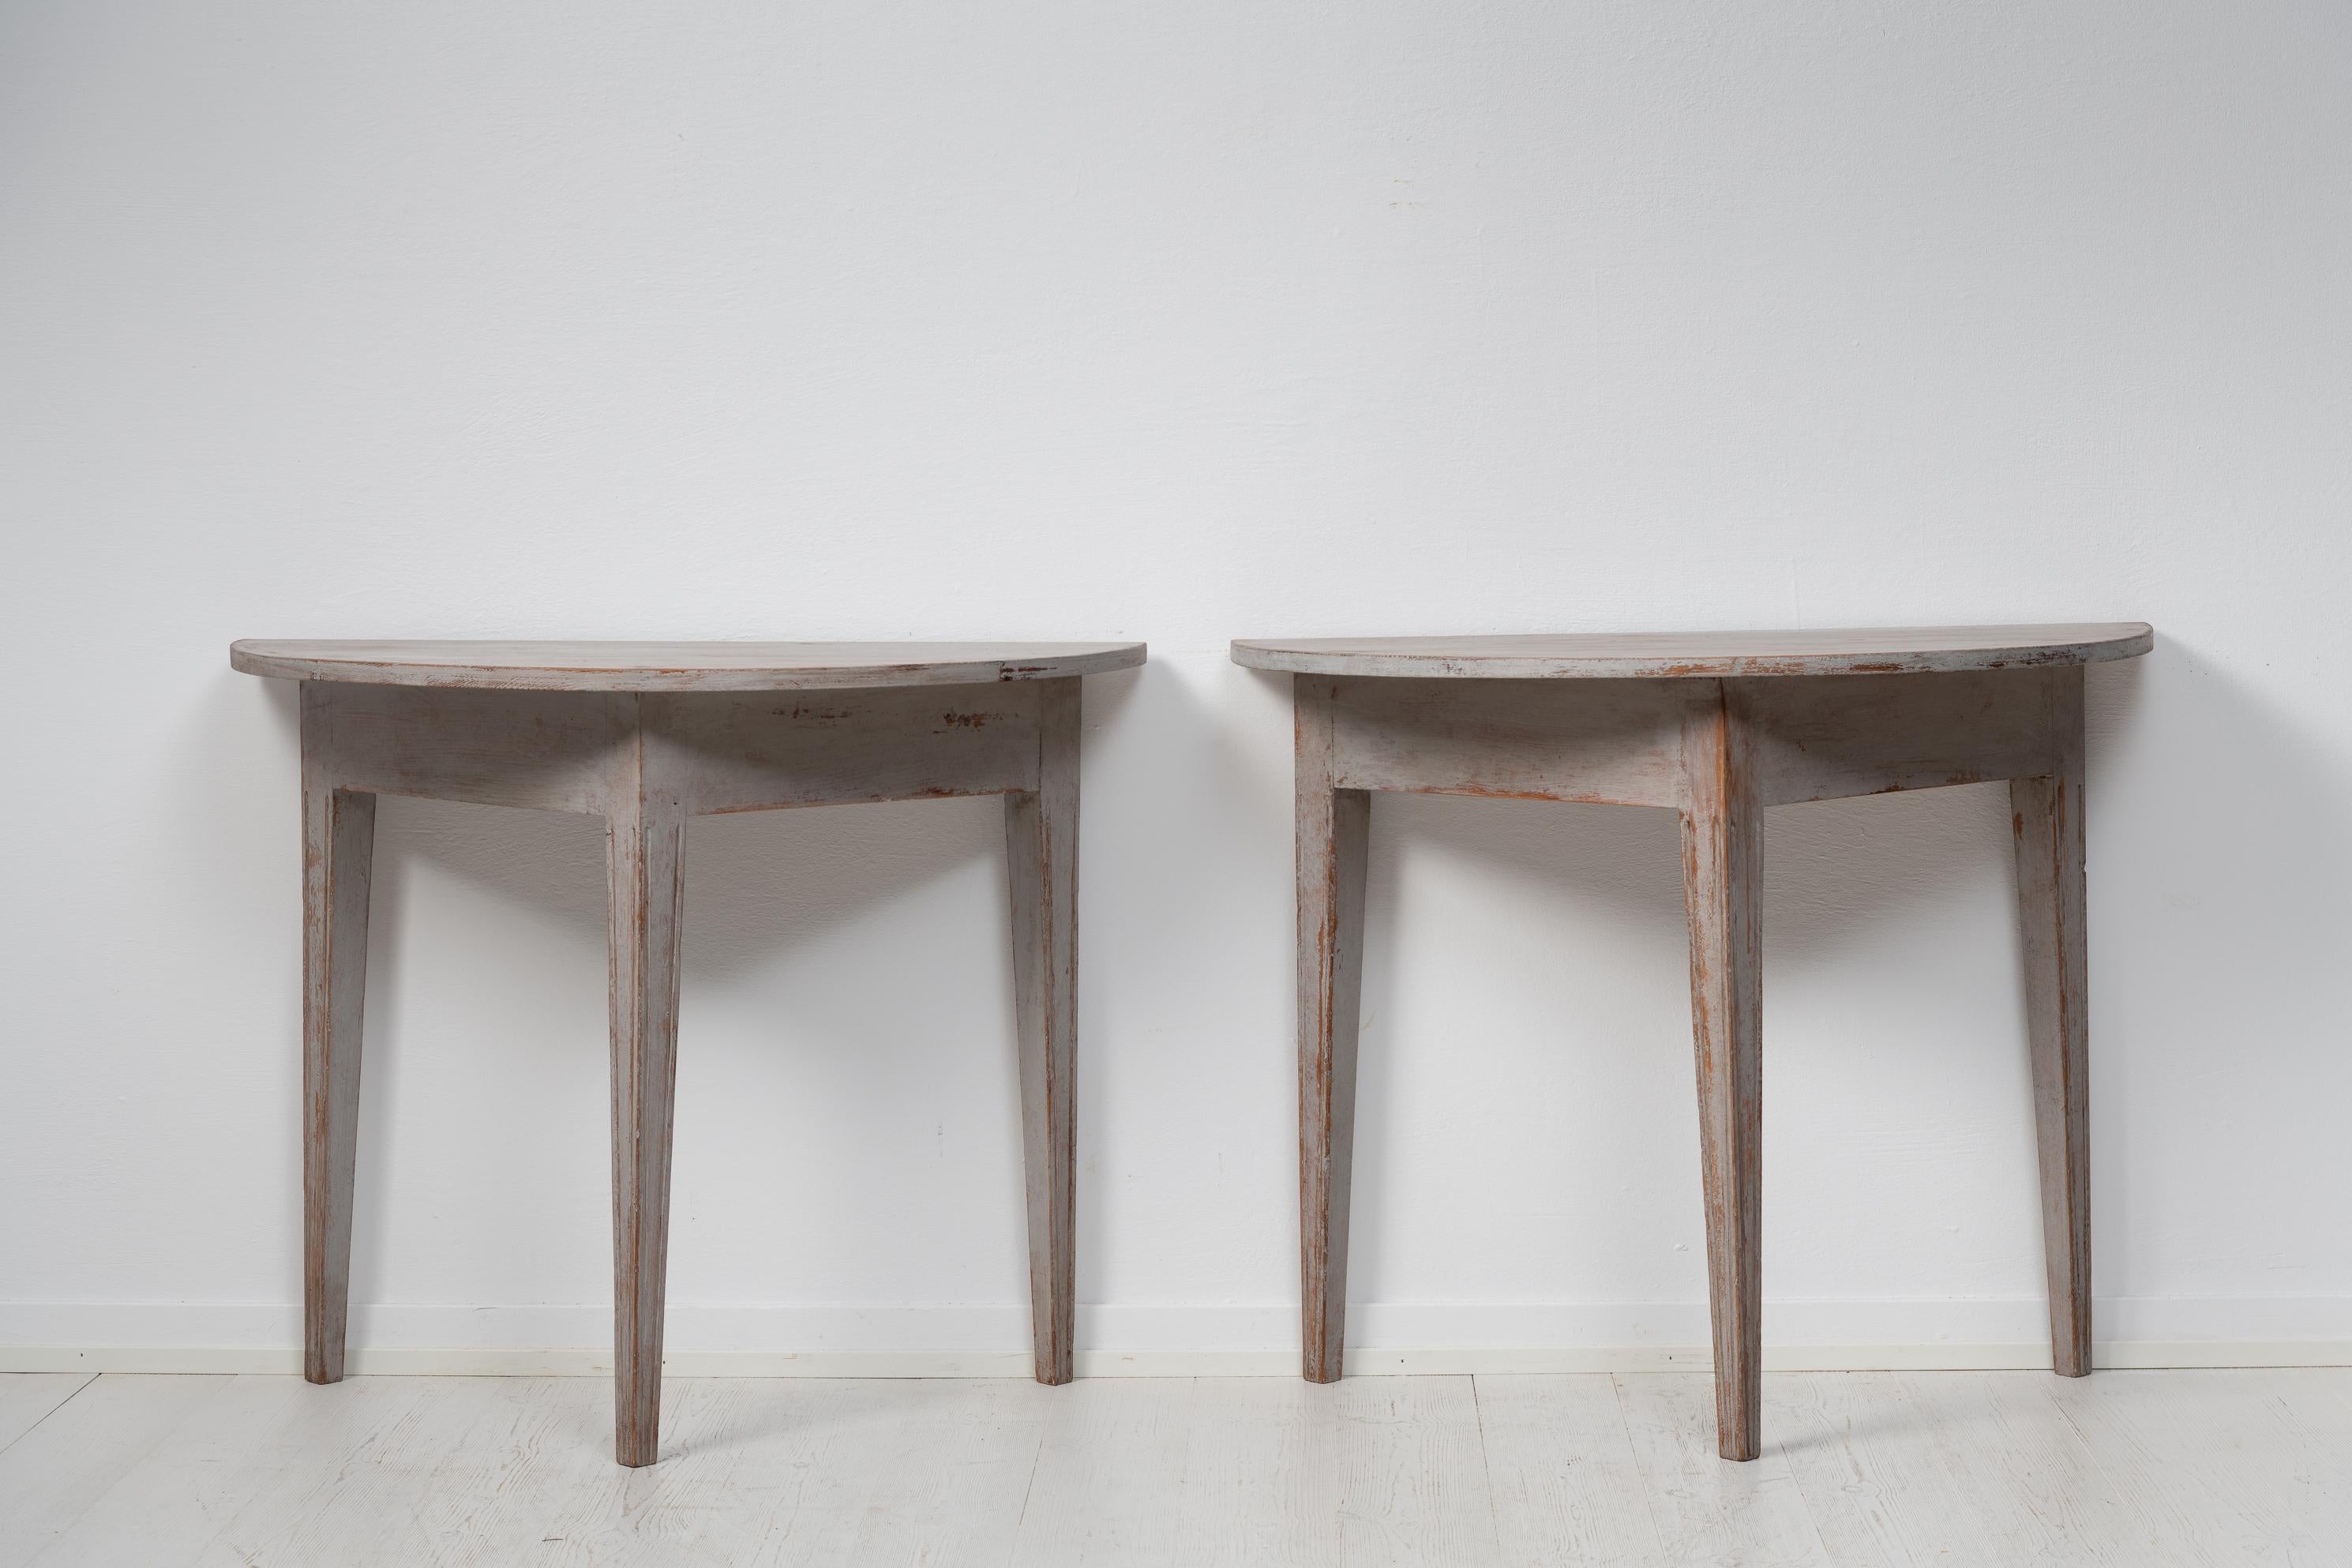 Schwedische Demi-Lune-Tische aus Gustavian. Der Tisch besteht aus zwei Halbkreisen, den so genannten demi lunes, daher der Name. Sie können zusammen als runder Tisch verwendet werden, der sich zum Beispiel hervorragend als Esstisch eignet. Er kann